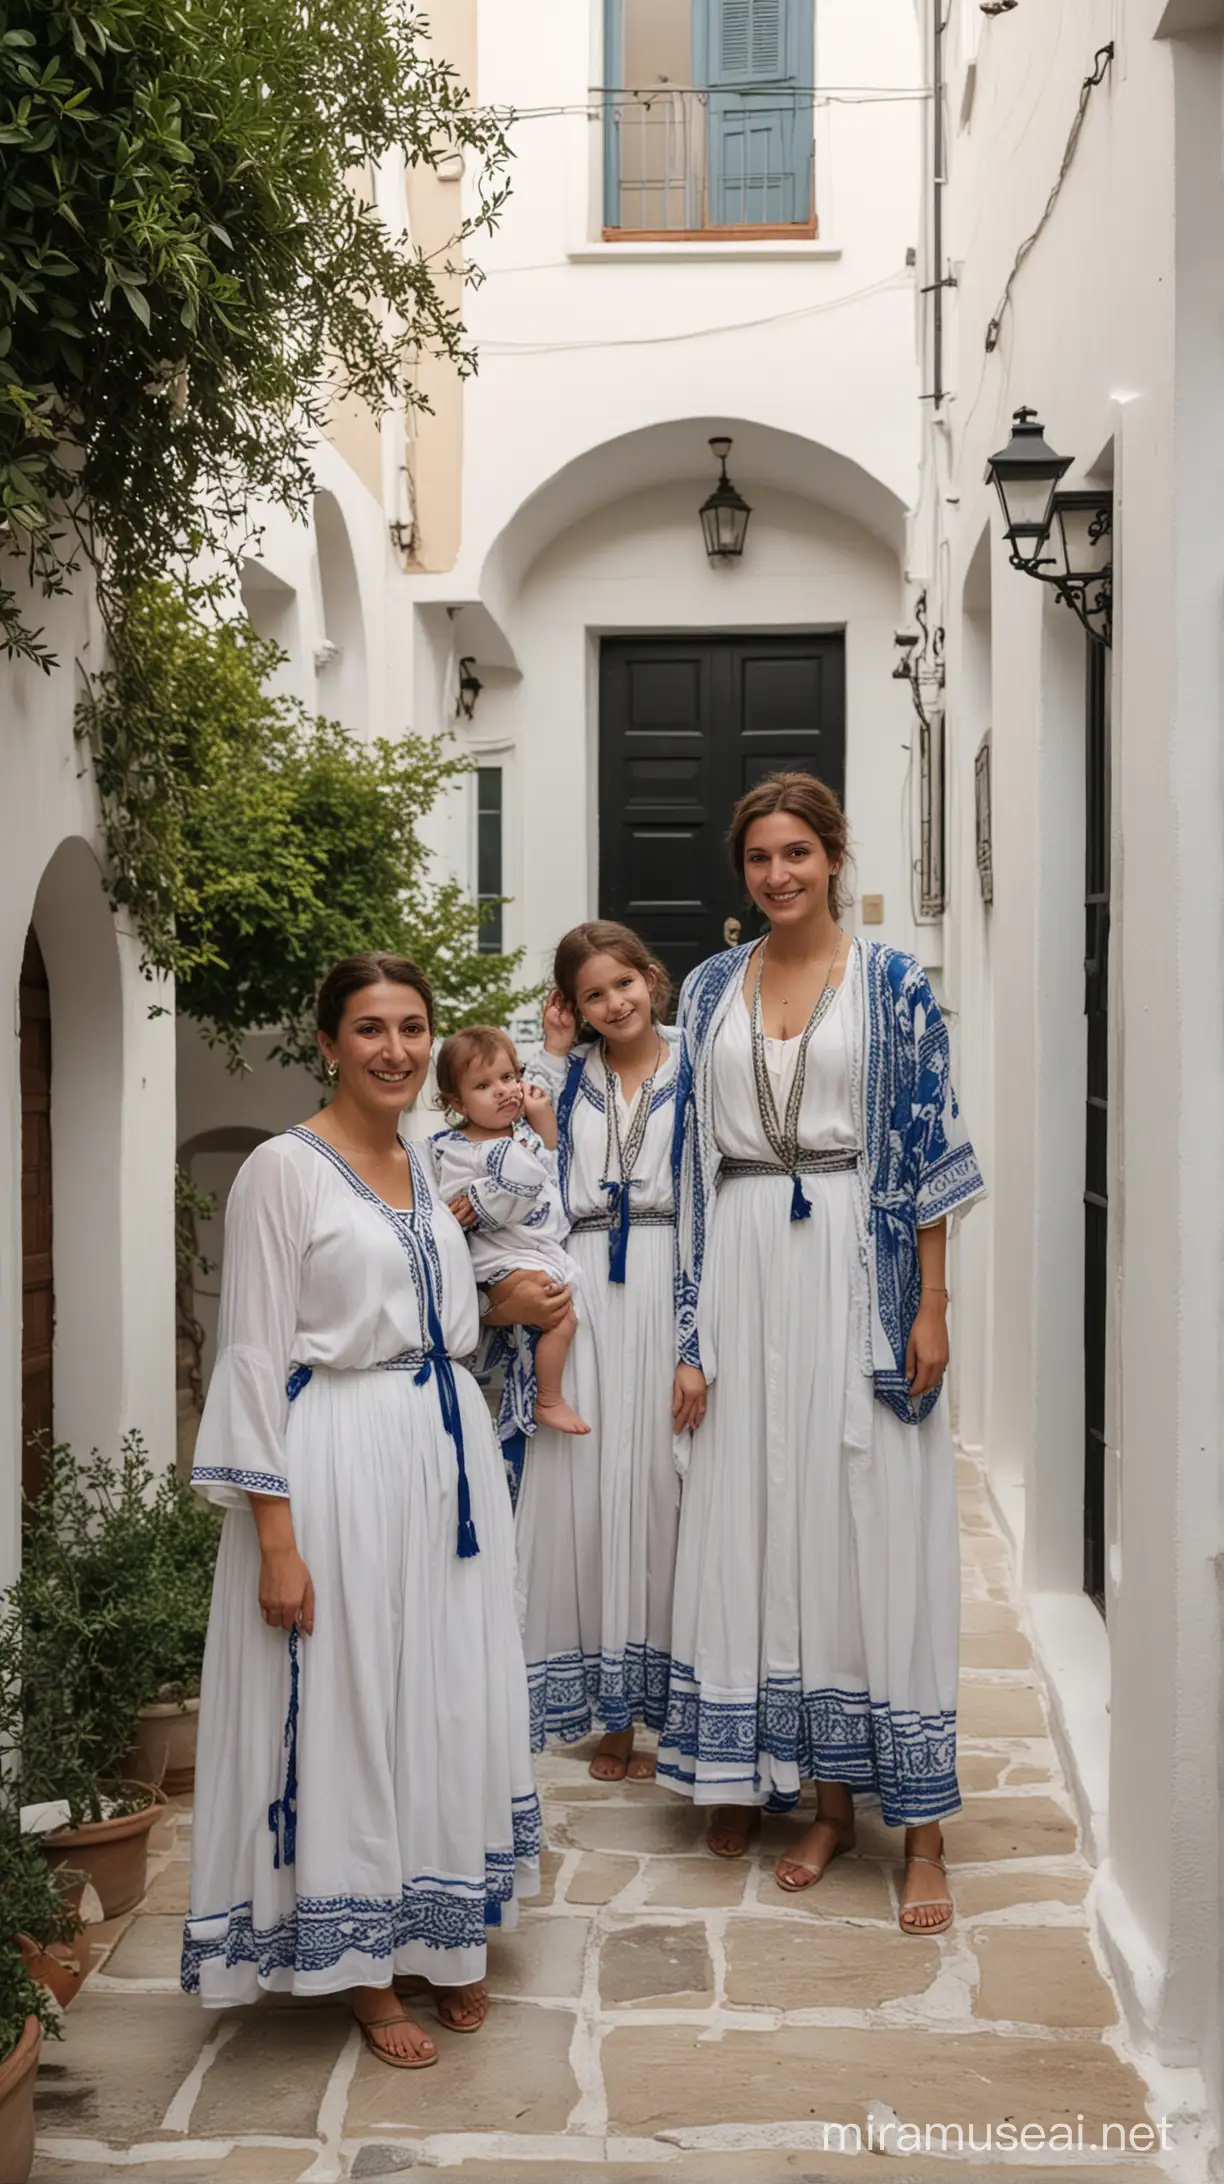 con vestimenta tipica griega familia griega celebra en el patio de su hogar una aurora defelicidad y esperanza,